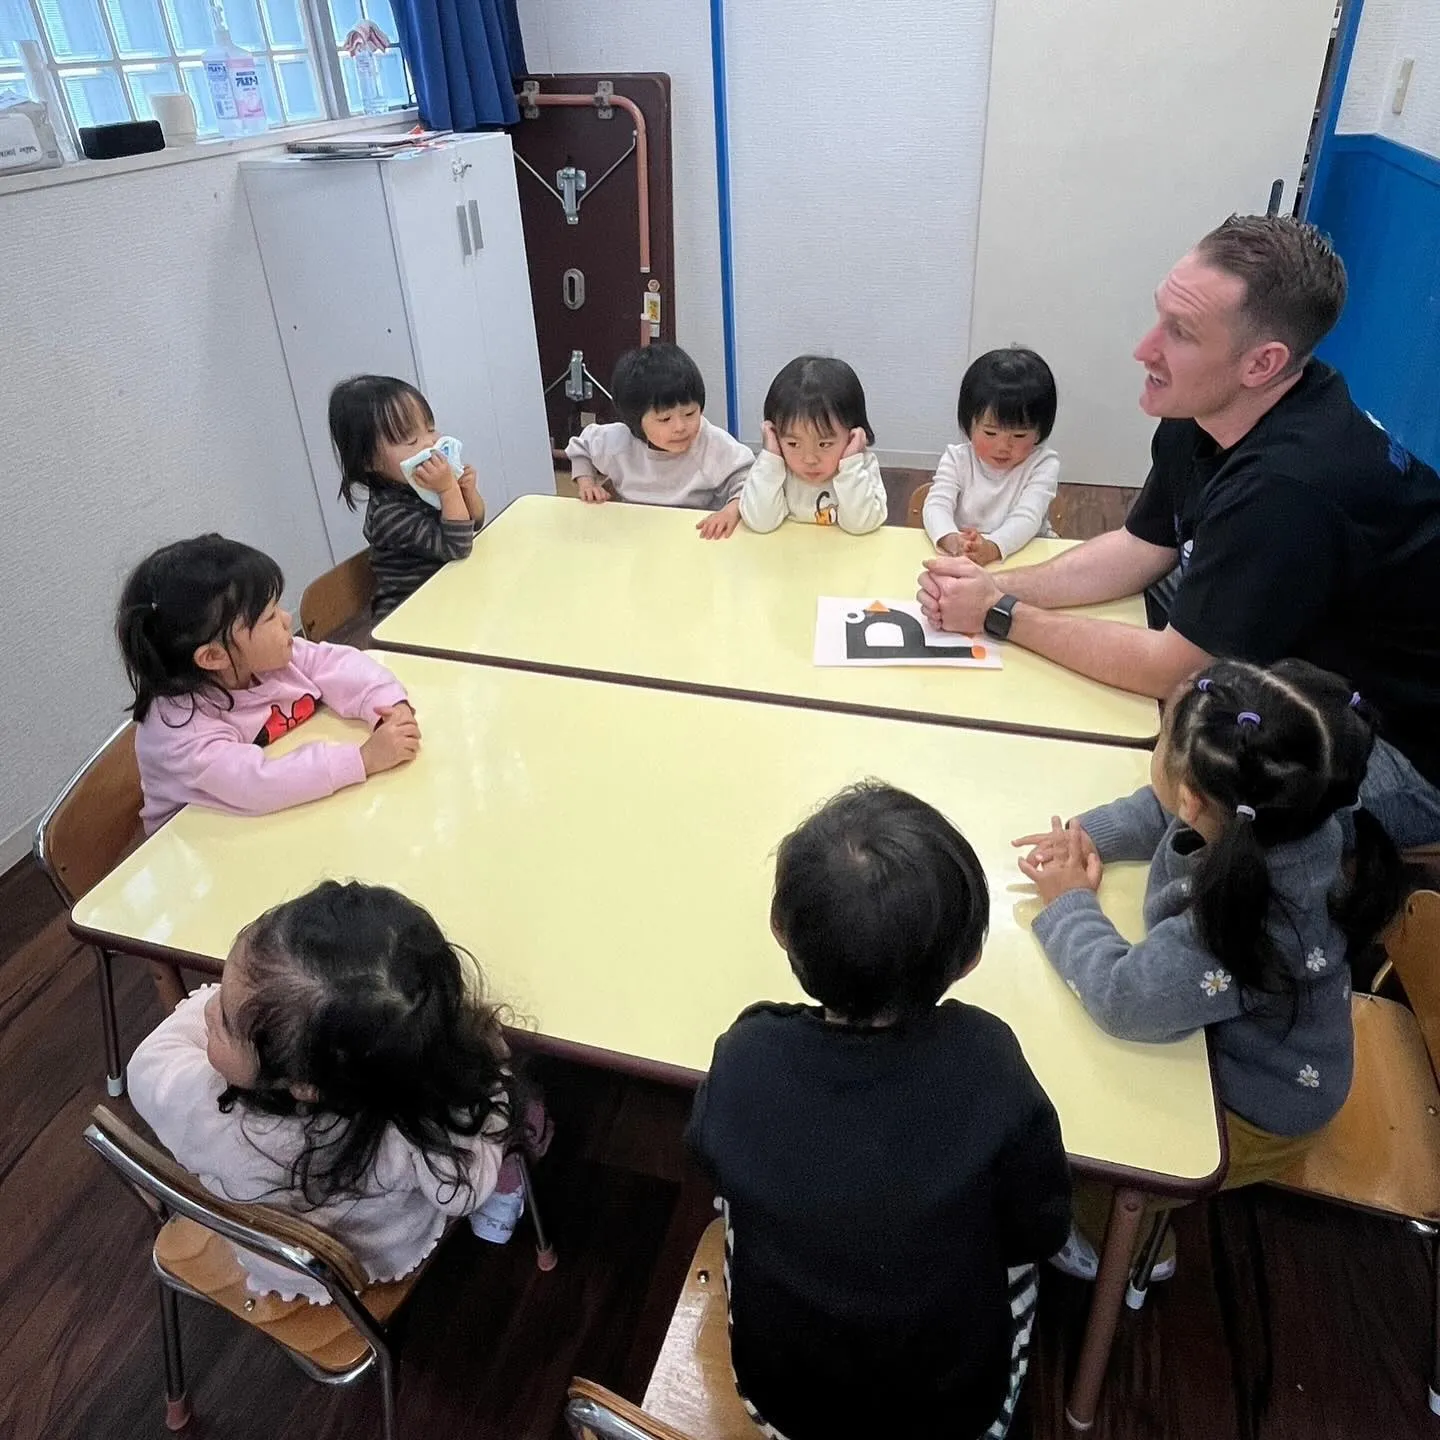 1/31(水) Toddler class today 😄